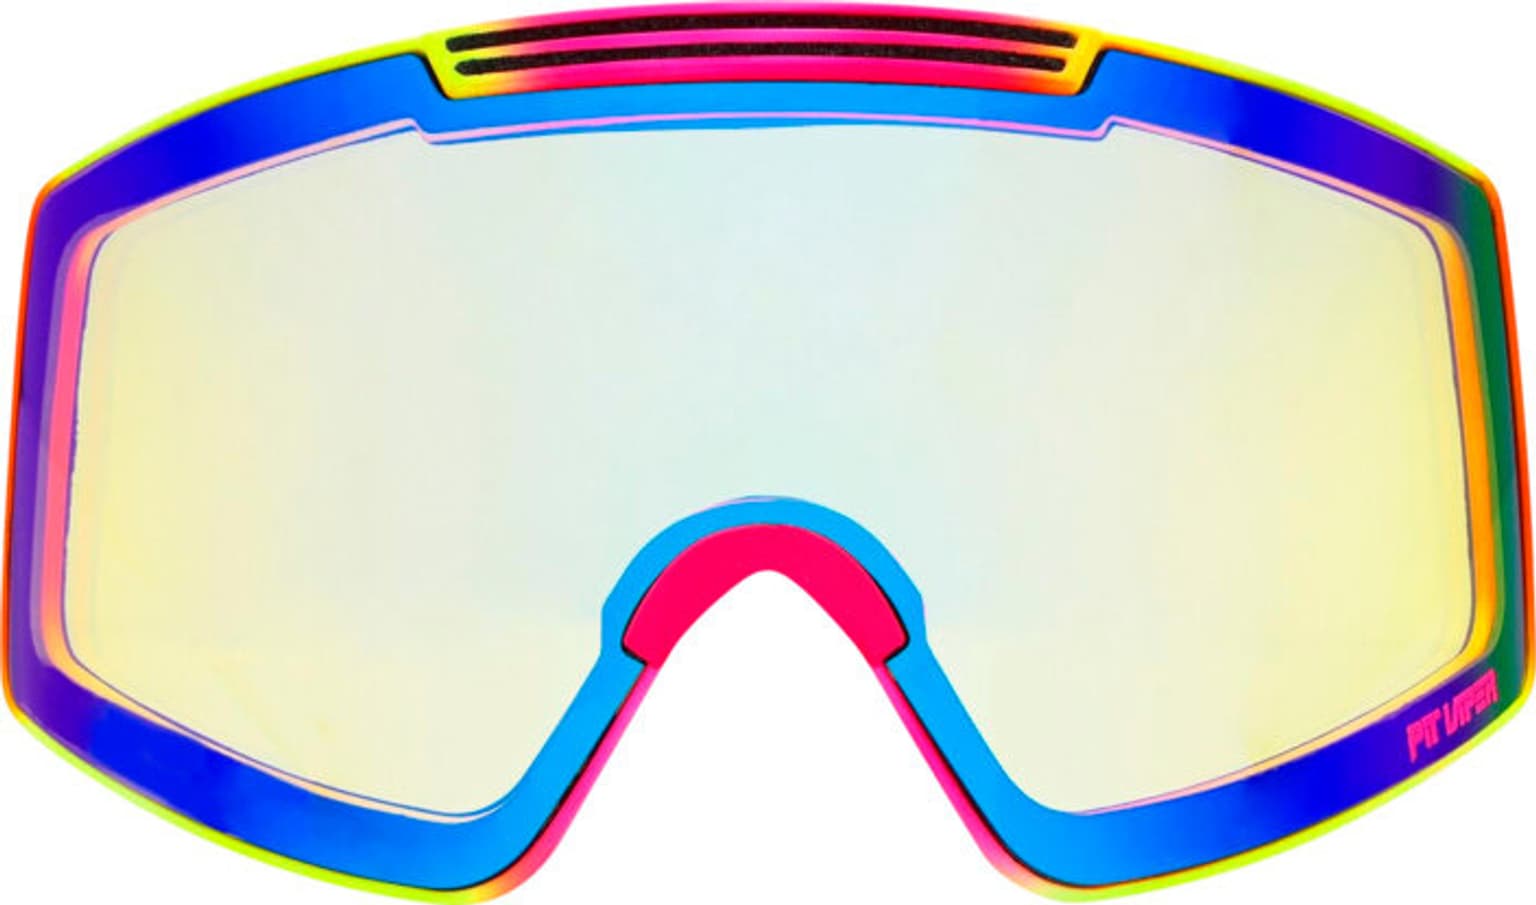 Pit Viper Pit Viper The Proform Goggle The Italo Masque de ski 4